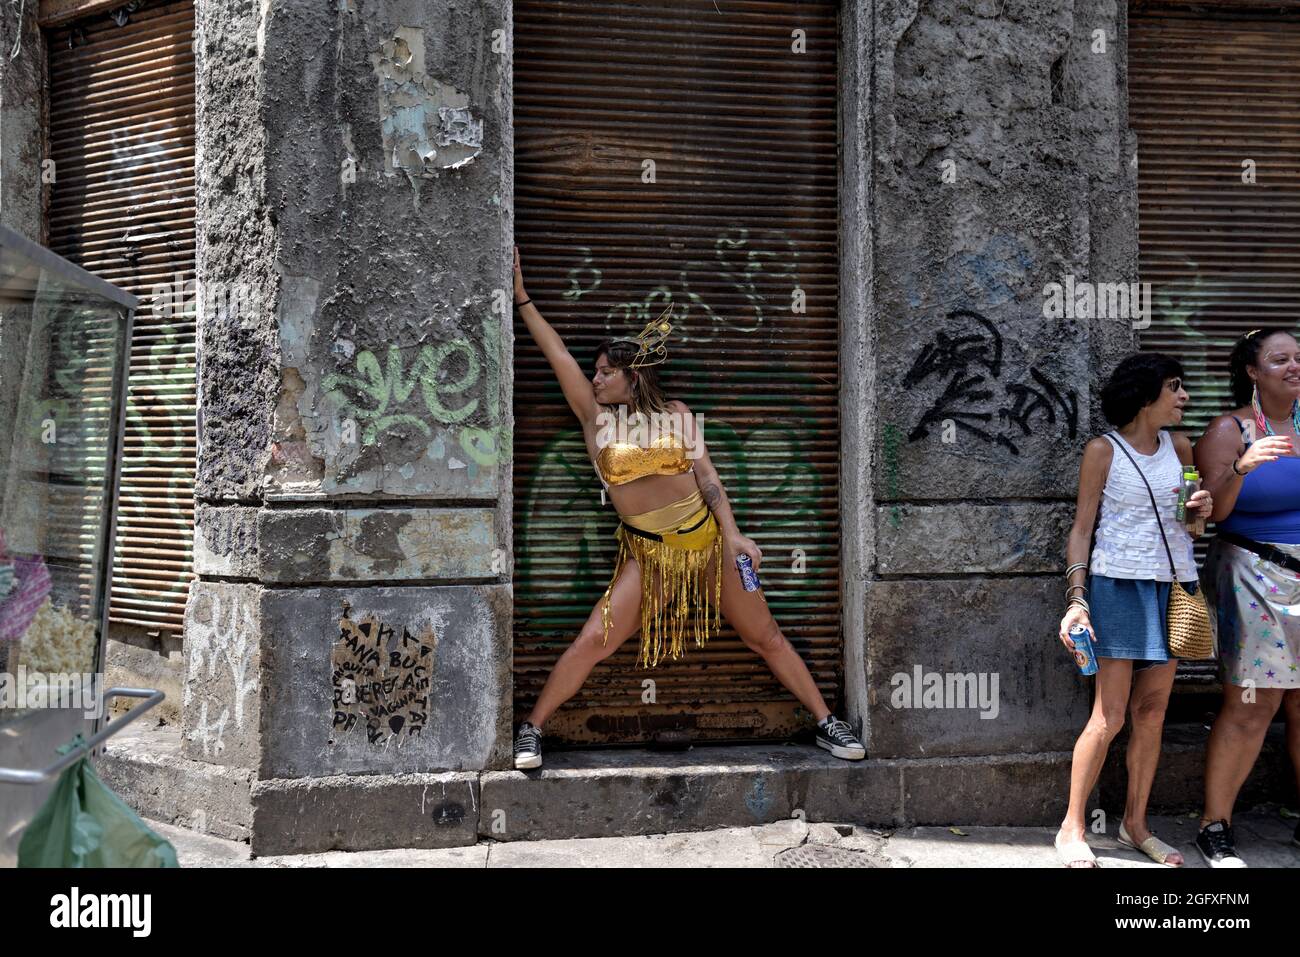 Brasil – 16 de febrero de 2020: Una mujer vestida de oro que se inclina contra la puerta oxidada actúa durante el Carnaval callejero celebrado en el centro de Río de Janeiro. Foto de stock